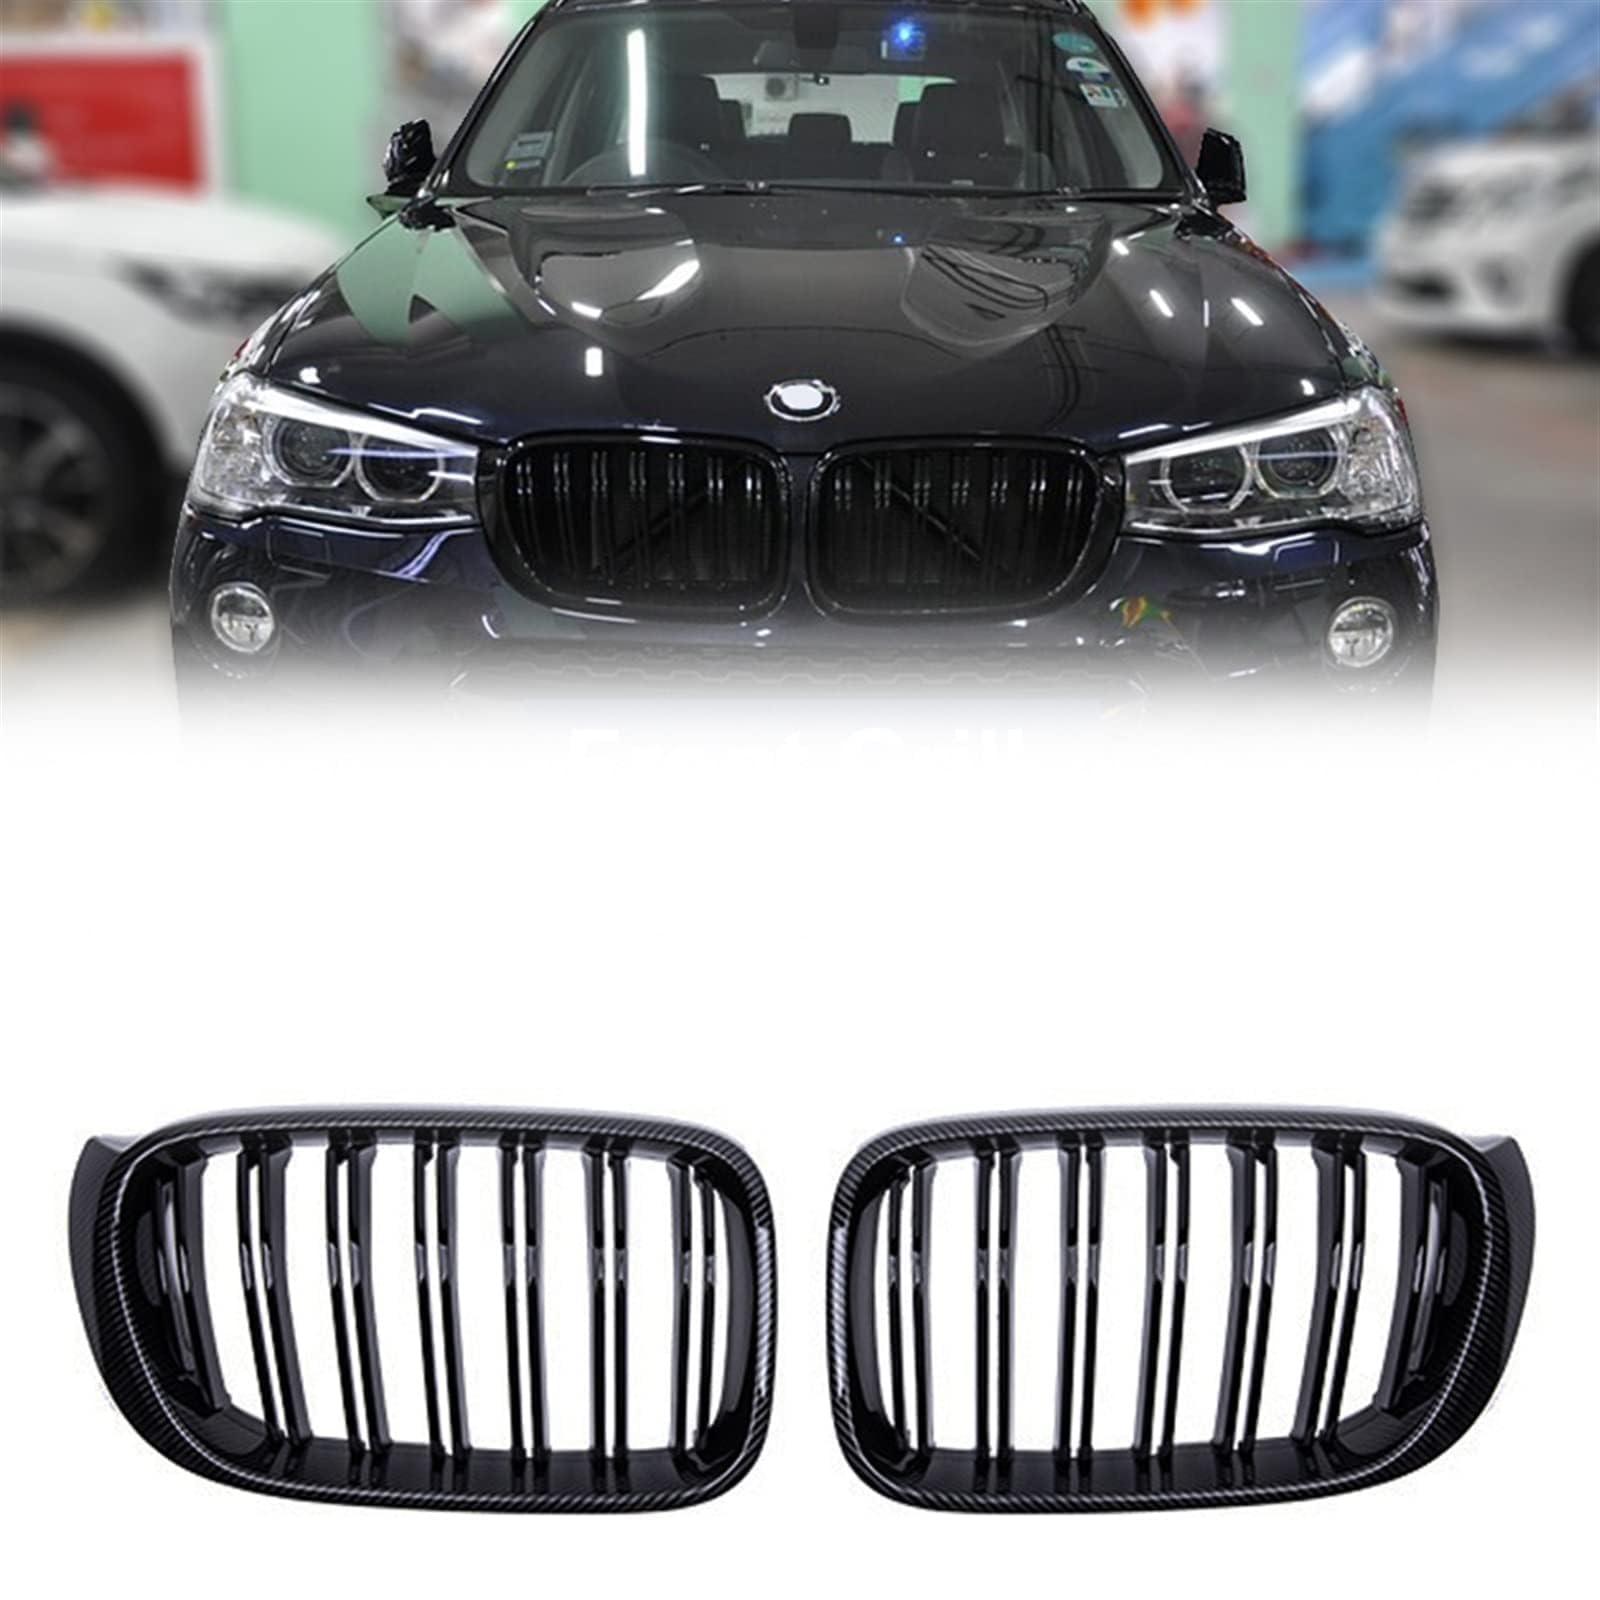 Auto Front Kühlergrille für BMW X3 X4 F25 F26 2014 2015 2016 2017,Front Nieren Kühlergrill Front stoßstange Gitter Waben Grill Dauerhaft von Xpccbhd